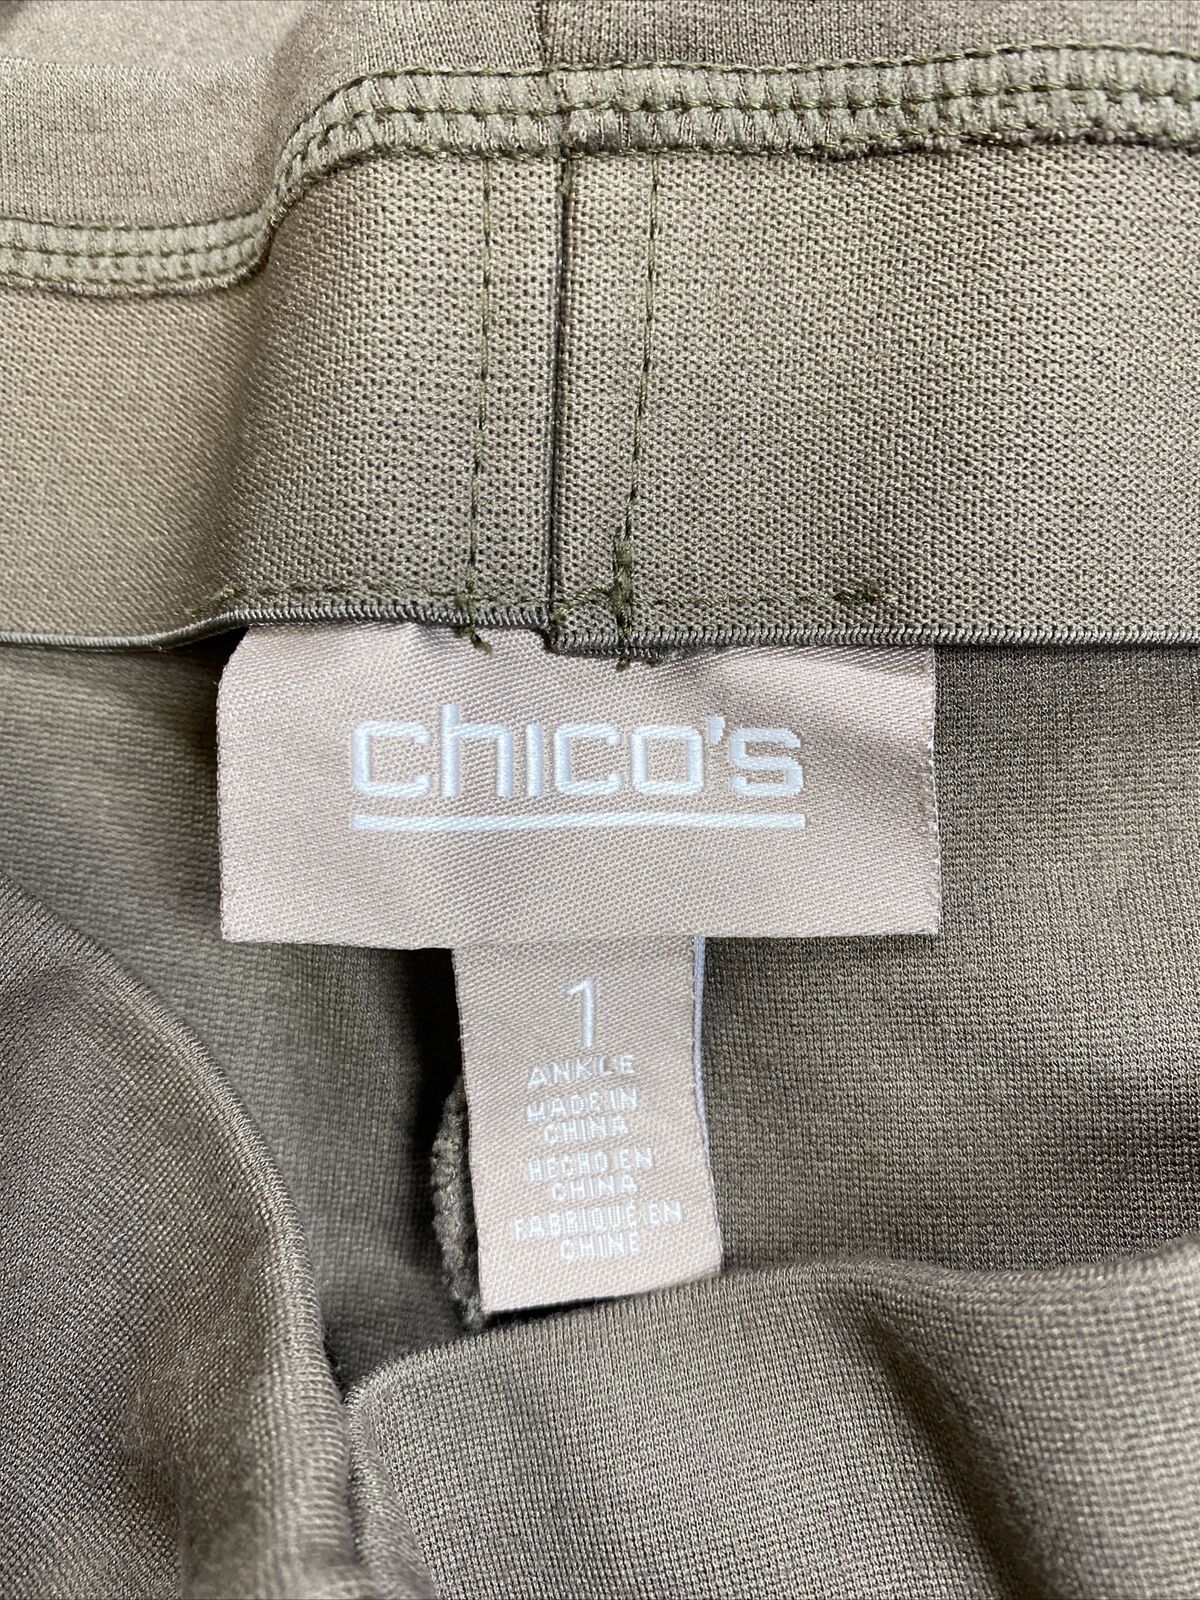 Chico's Pantalones tobilleros ajustados Ponte color marrón para mujer - 1/US 8